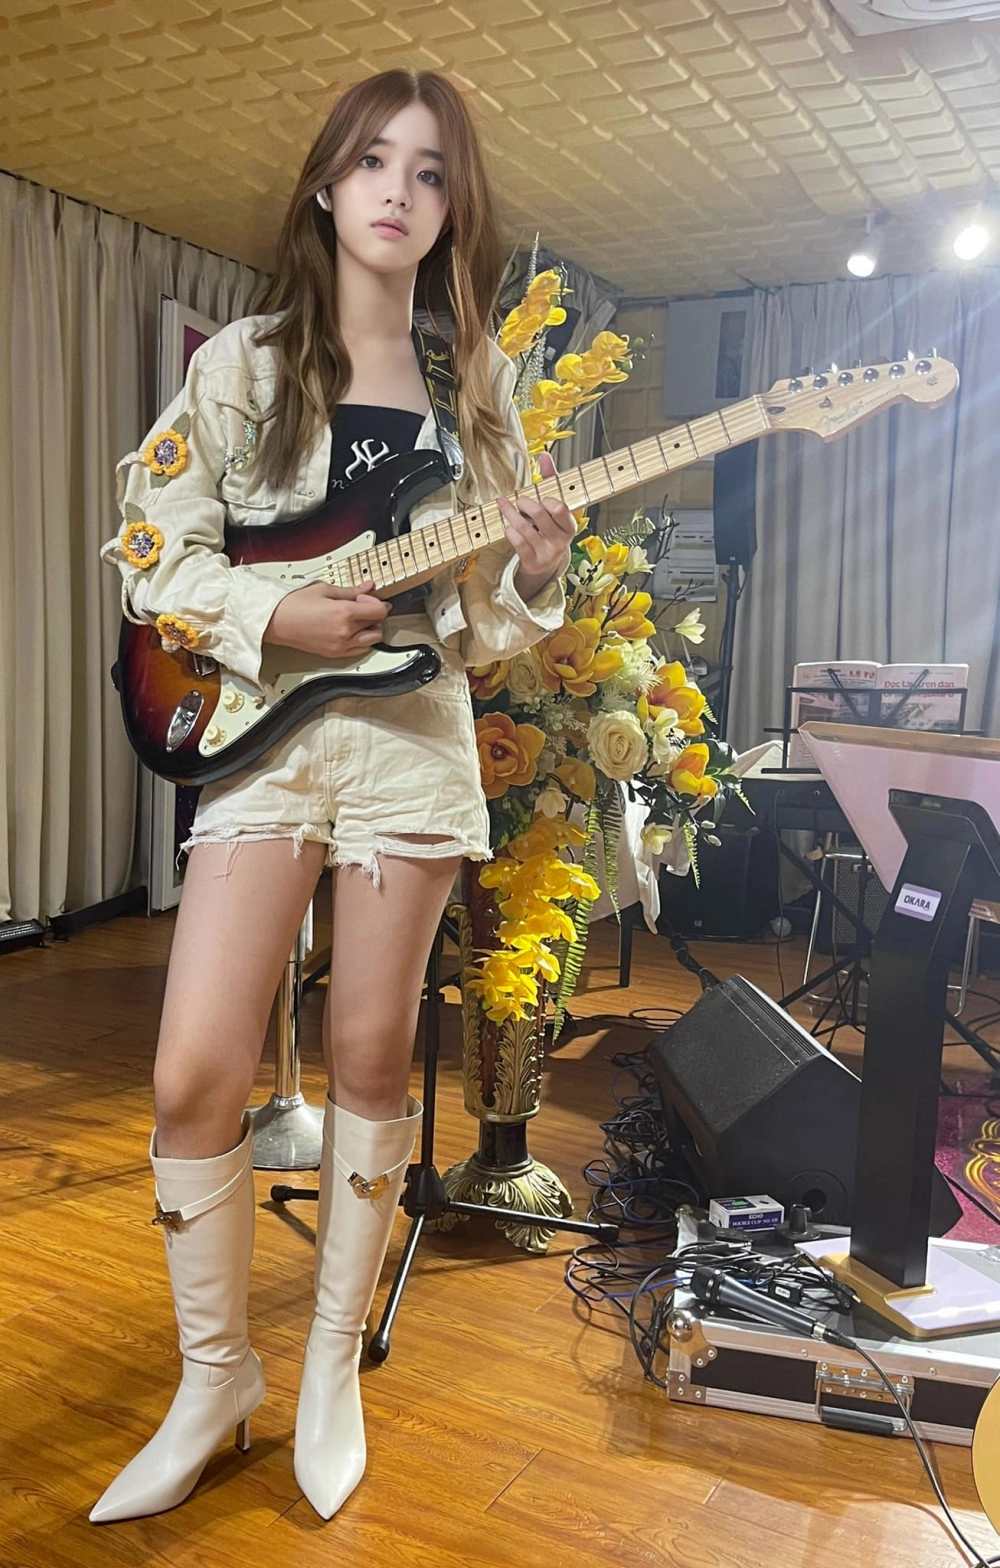 Con gái nuôi bằng kiều 1m7 diện áo dài dáng chuẩn hoa hậu đời thường mặc chất chơi như sao nhạc rock